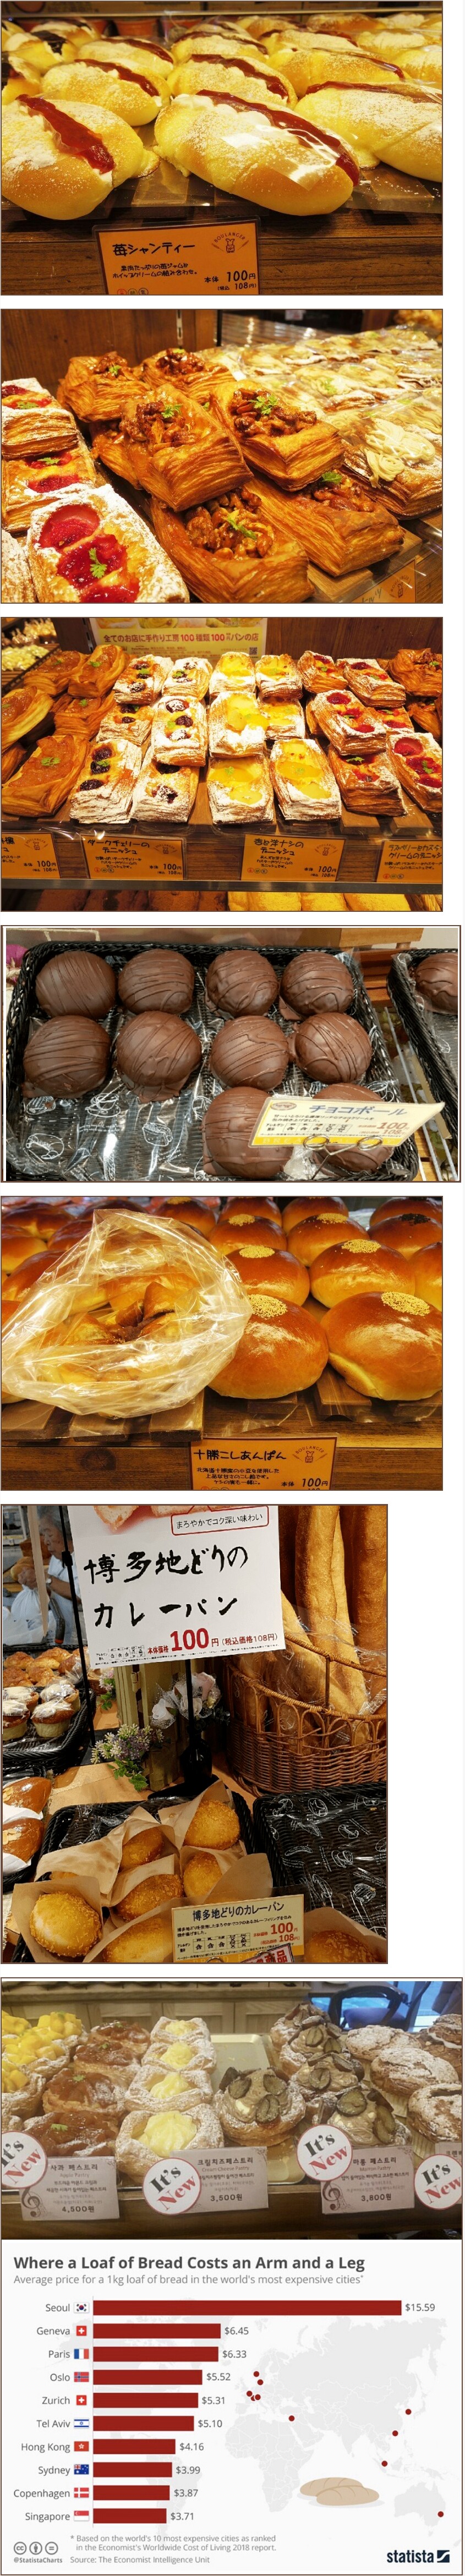 일본의 살인적인 빵가격